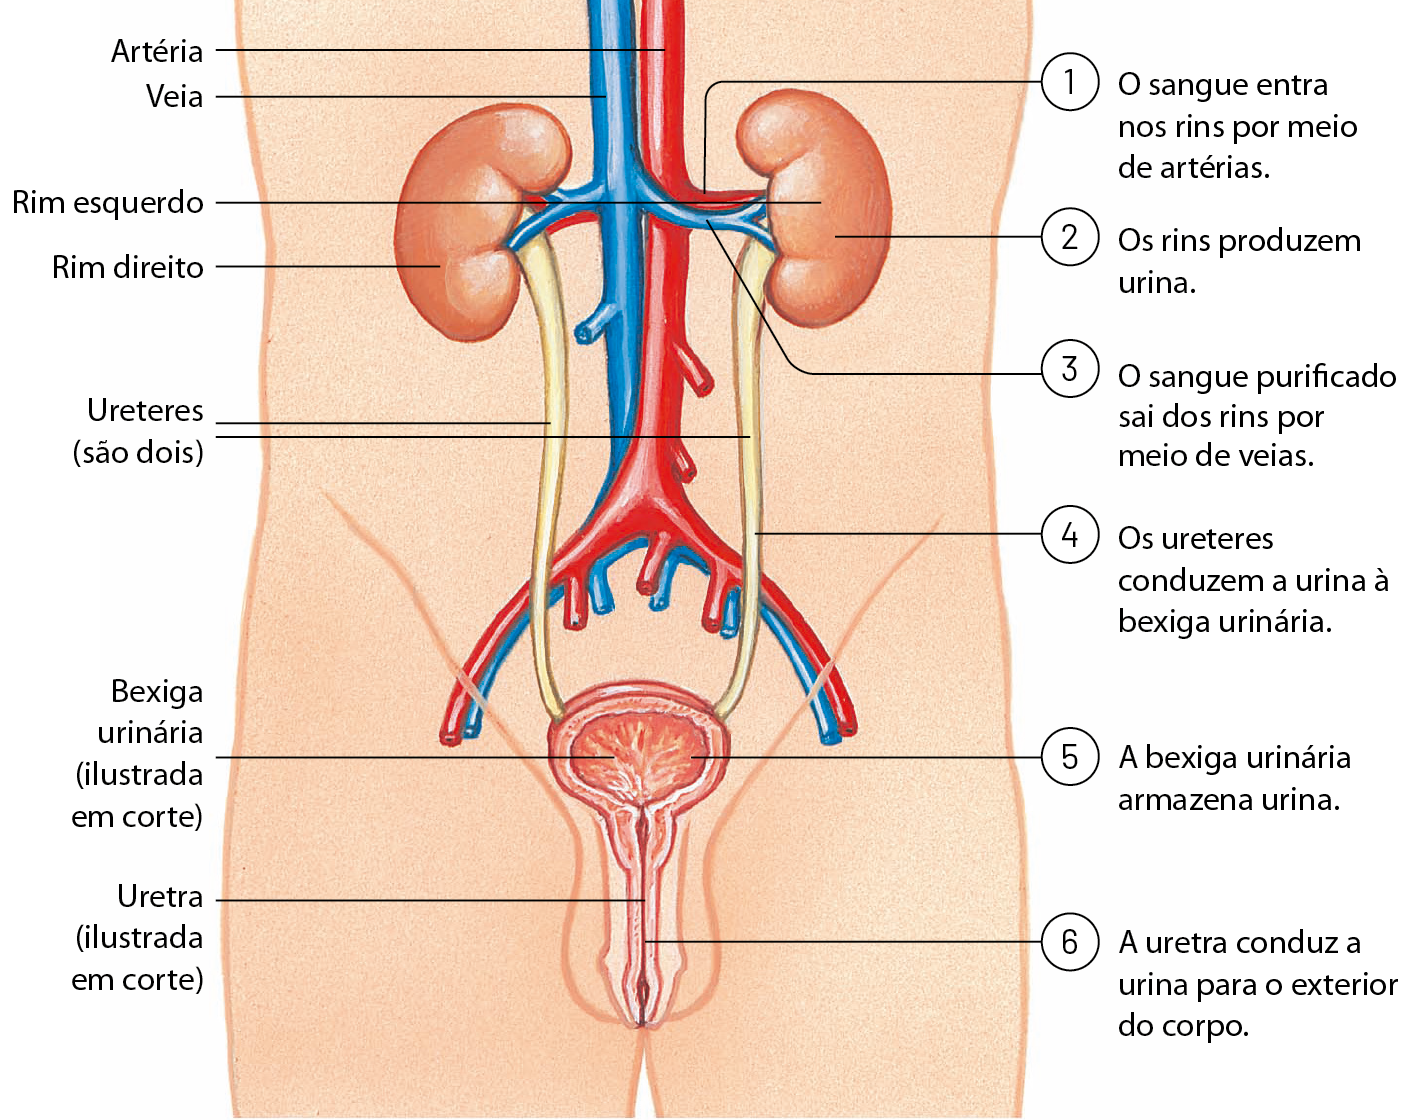 Esquema. Silhueta mostrando apenas o tronco de um homem. No centro, dois tubos de grande diâmetro. Azul: veia e vermelho: artéria. 1: O sangue entra nos rins por meio de artérias. Esses tubos tem ramificações que penetram em estruturas em forma de feijão: rim direito e rim esquerdo. 2: Os rins produzem urina. Dos rins, saem vasos azuis de menor diâmetro. 3: O sangue purificado sai dos rins por meio de veias. De cada rim sai um tubo: os ureteres. Os ureteres vão até uma estrutura arredondada: bexiga urinária (ilustrada em corte). 4: Os ureteres conduzem a urina à bexiga urinária. 5: A bexiga urinária armazena urina. Saindo da bexiga urinária, um canal que passa pelo interior do pênis e vai até a parte externa do corpo: uretra (ilustrada em corte). 6: a uretra conduz a urina para o exterior do corpo.